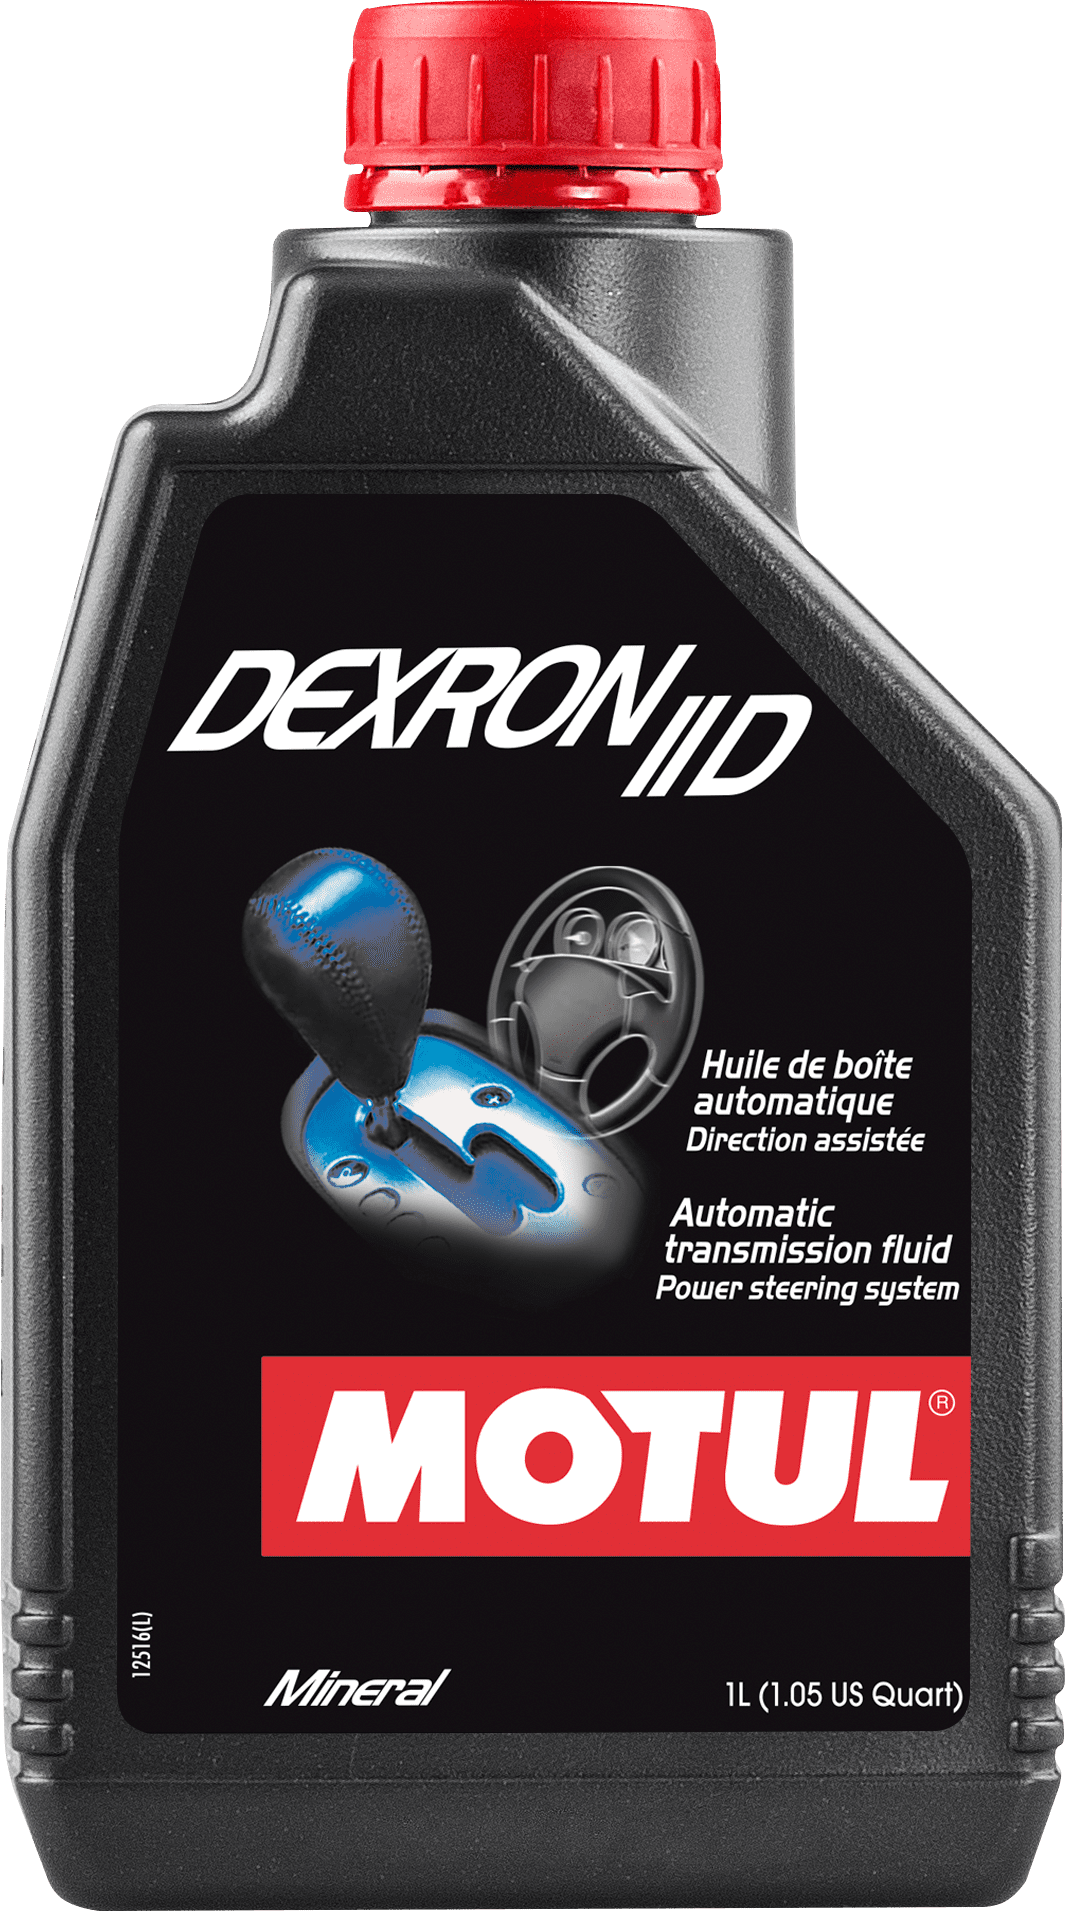 Motul Dexron II-D, 1 lt